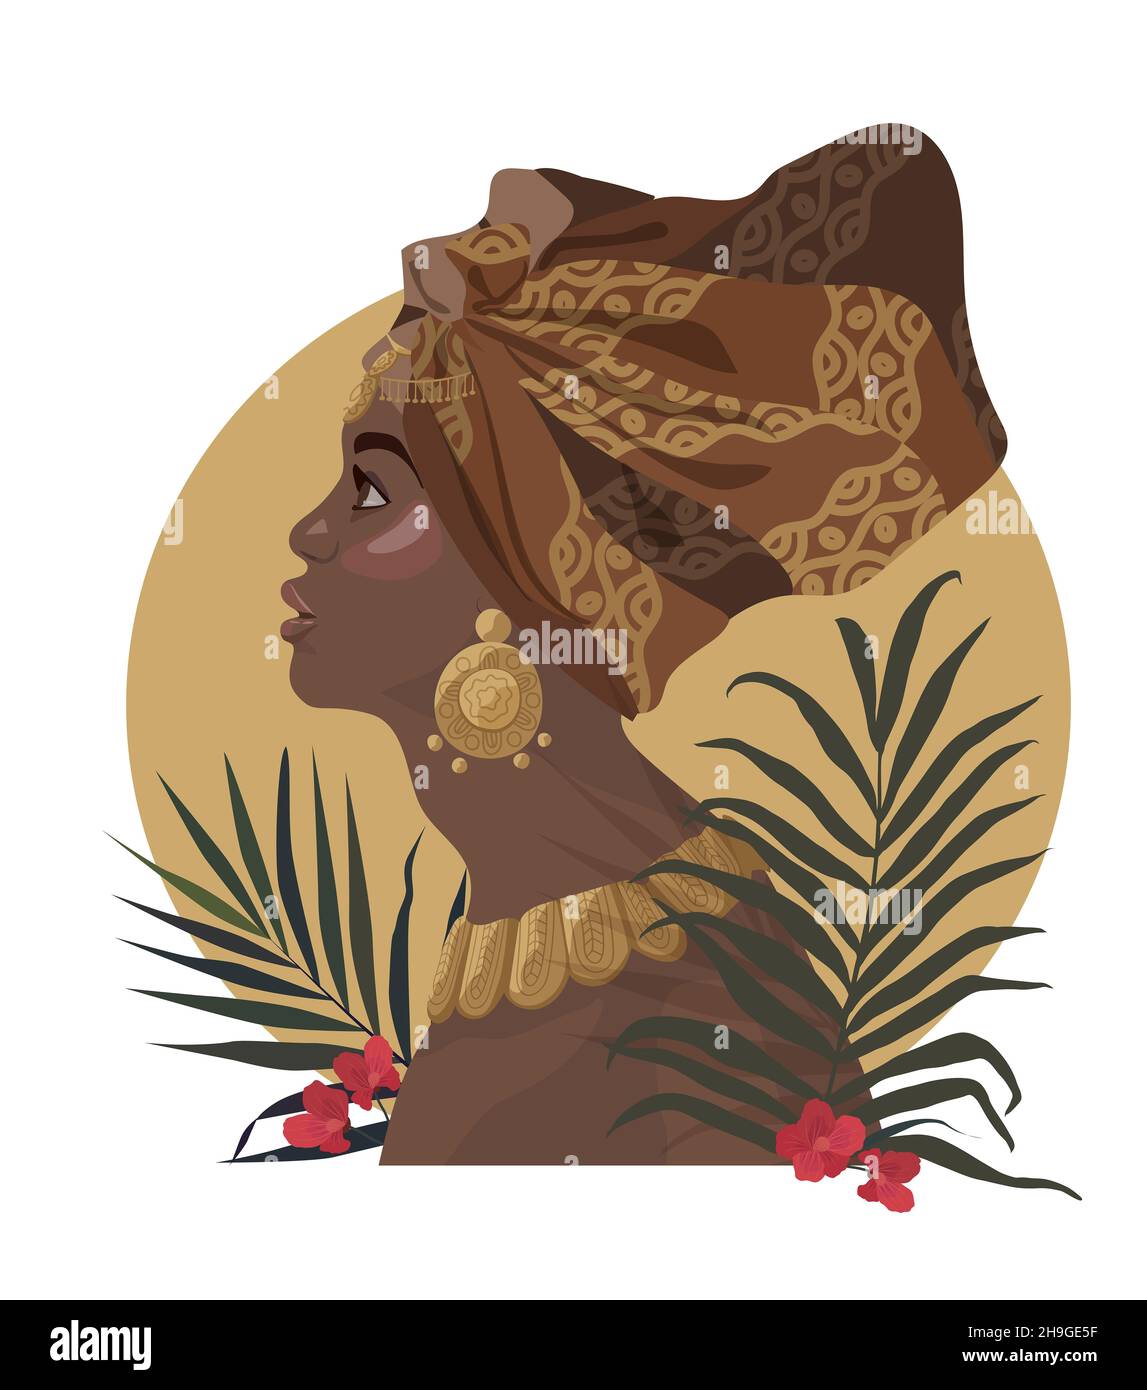 Belle femme, turban, Kente Head Wrap africain, boucles d'oreilles traditionnelles en or, feuilles de palmier tropicales, fond blanc isolé.3D Illustration vectorielle Banque D'Images